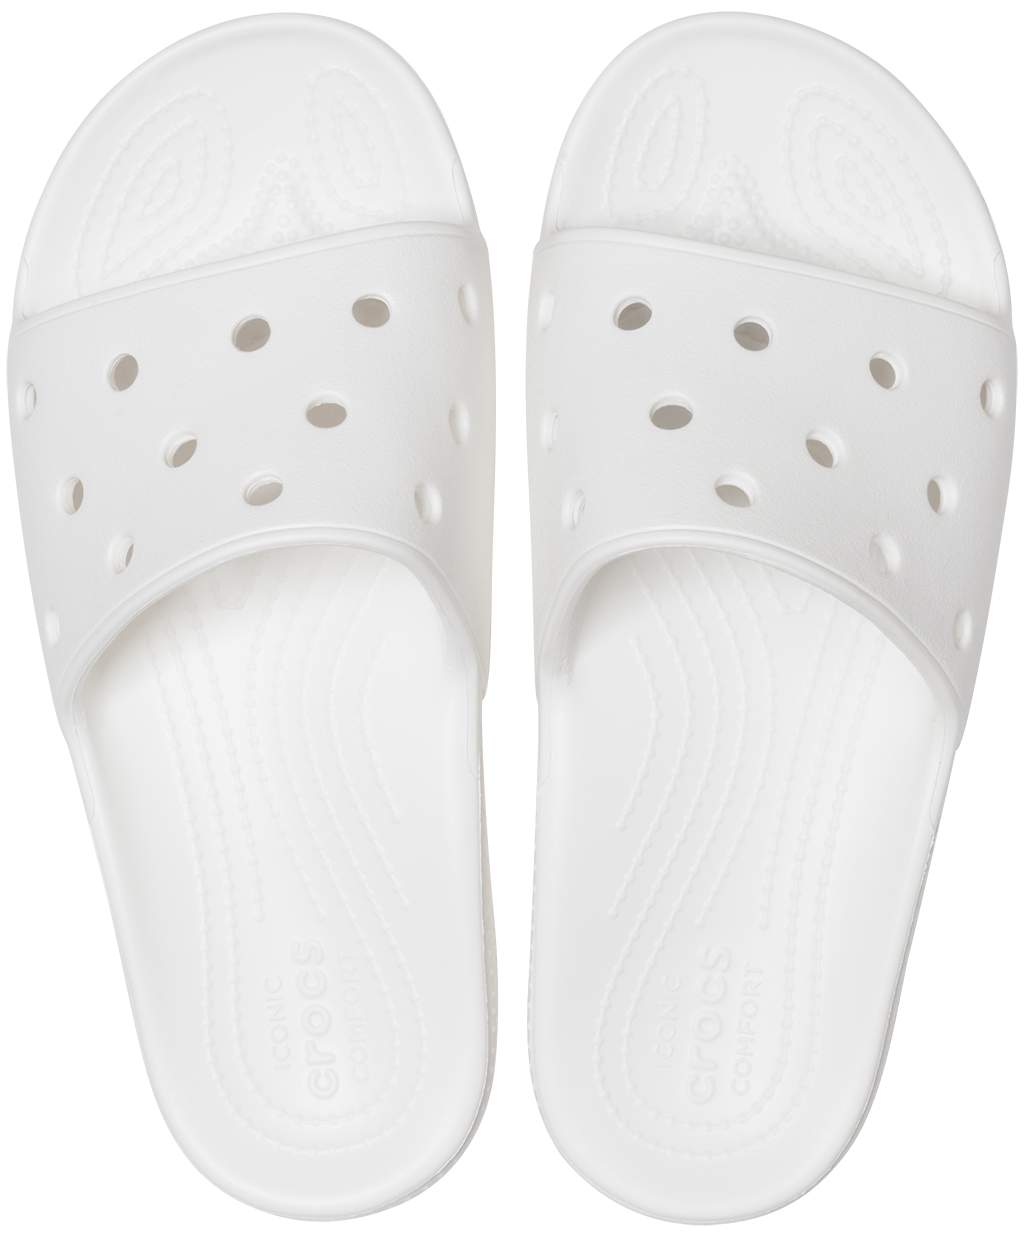 crocs slides white